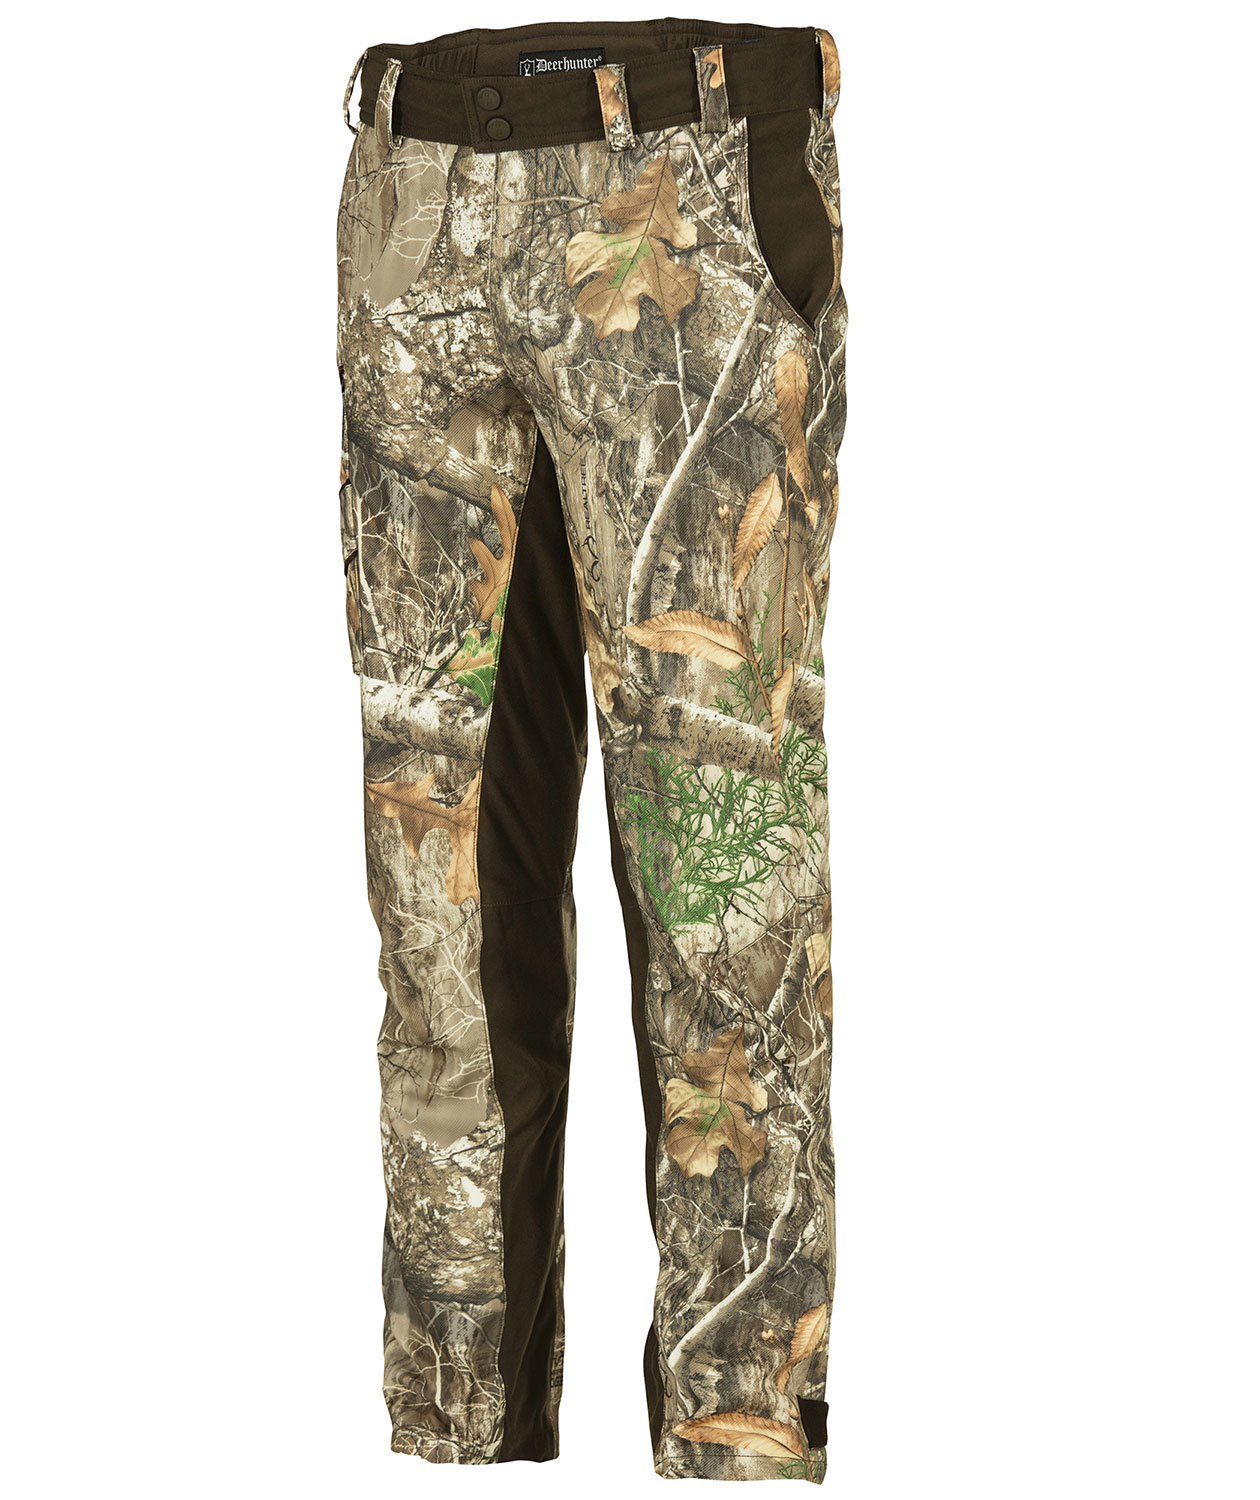 Deerhunter Avanti Trousers waterproof breathable hunting shooting RRP£68.99 SALE 